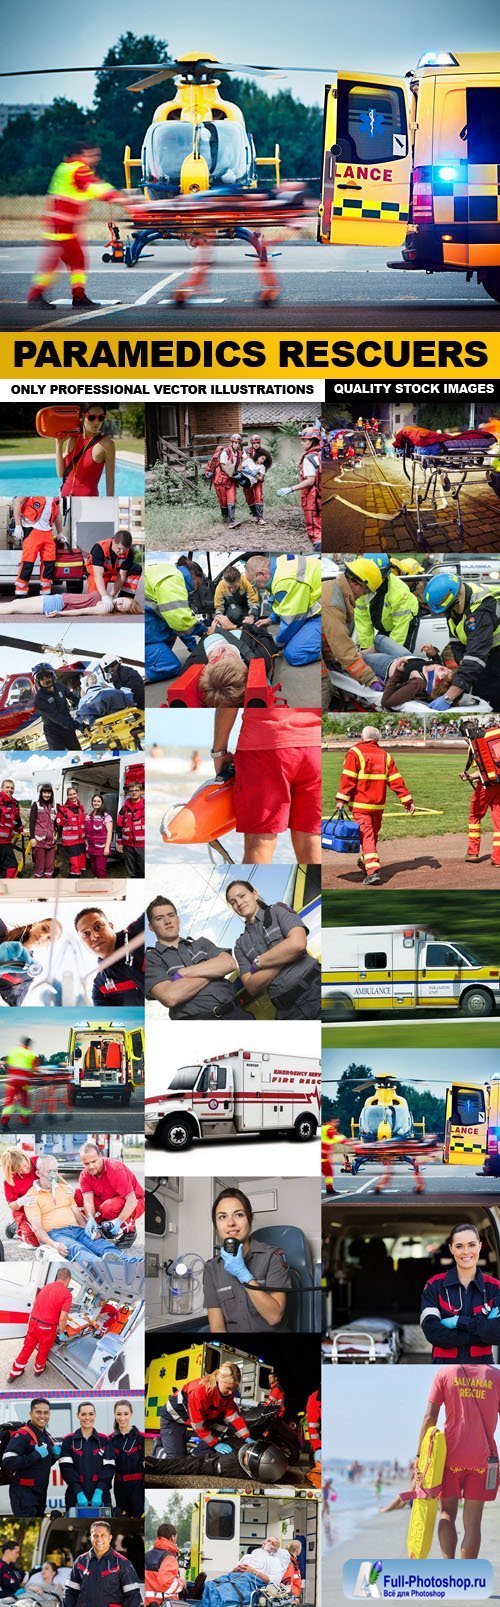 Paramedics Rescuers - 25 HQ Images